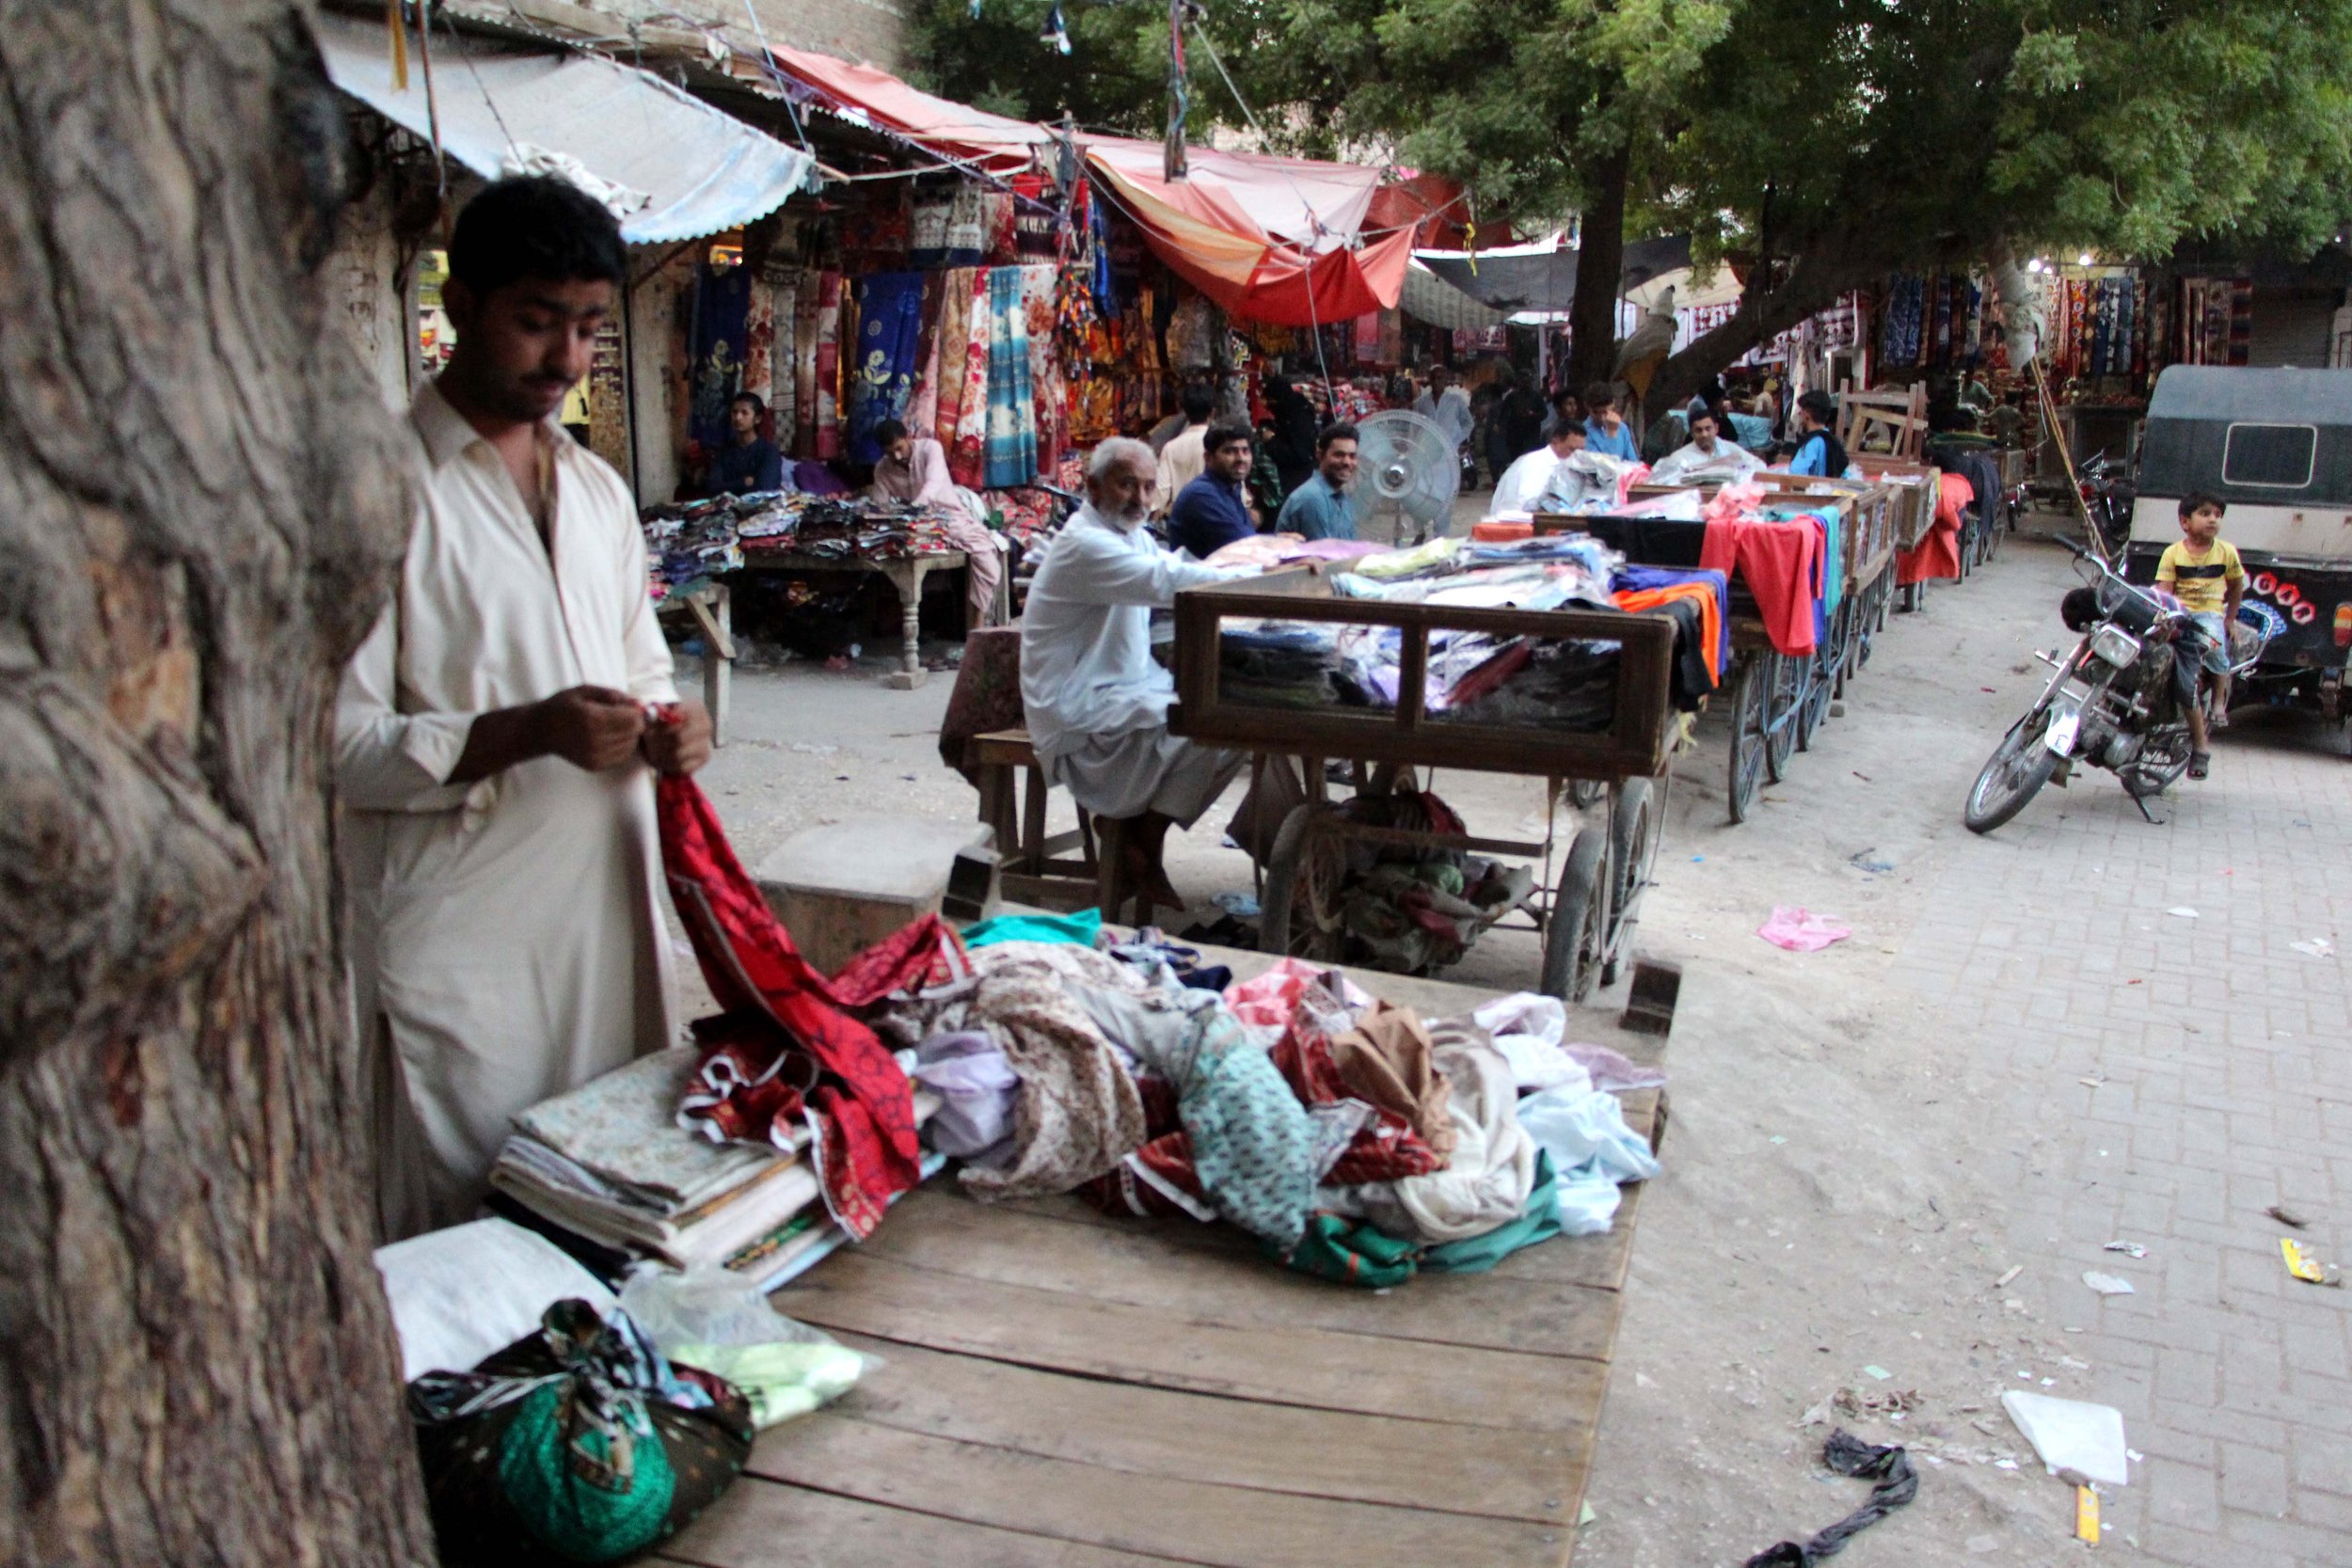  Delo z rabljenim tekstilom mnogim Pakistancem zagotavlja preživetje, industrija rabljenih oblačil pa prispeva k zmanjšanju revščine in brezposelnosti. Foto: Adil Jawad 